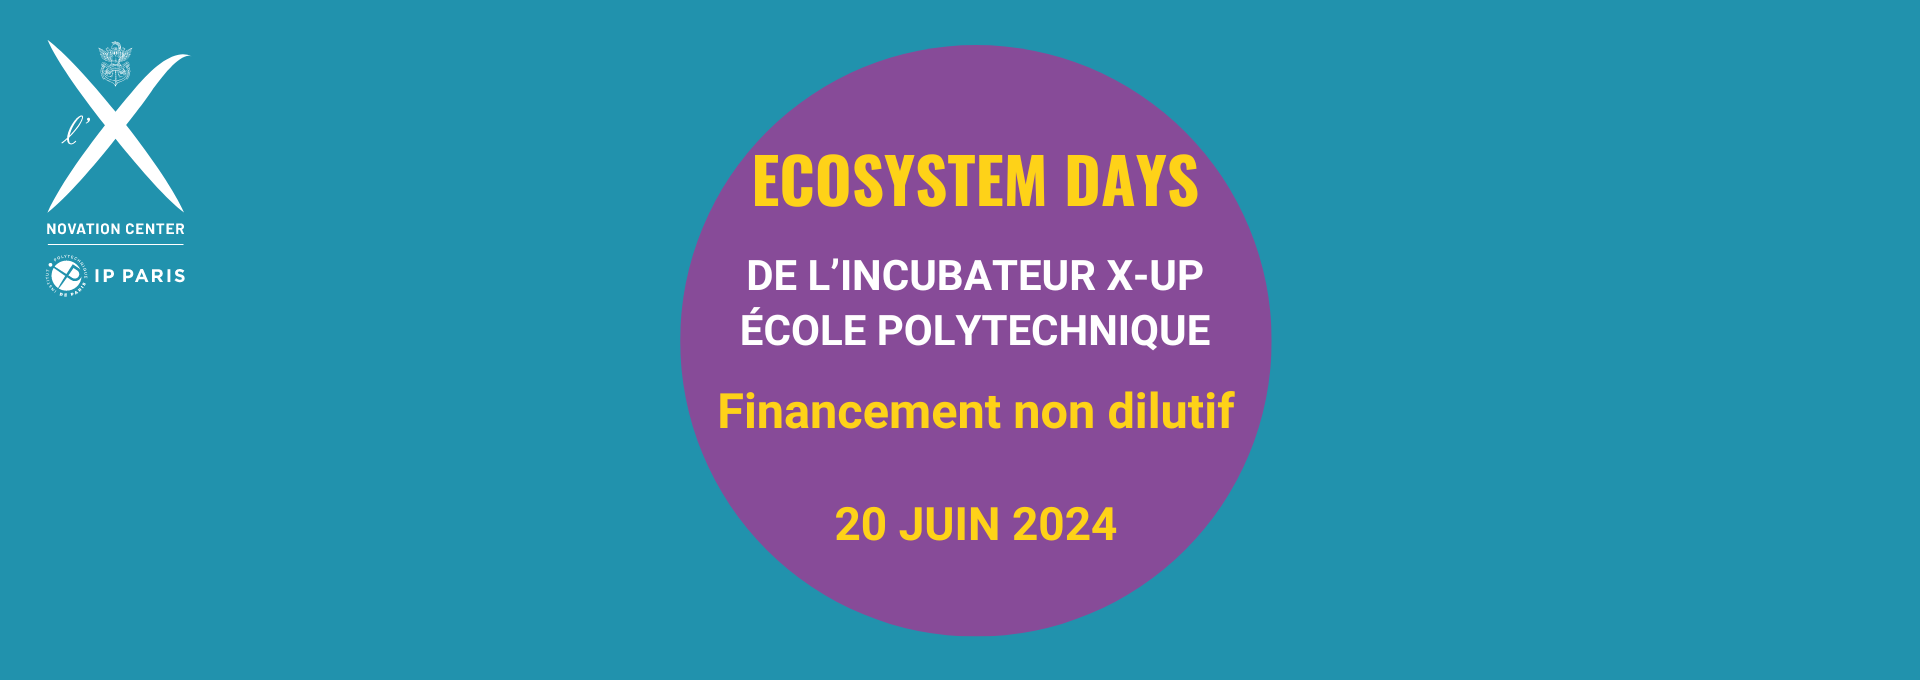 Ecosystem Days de l’incubateur X-UP de l’École polytechnique  